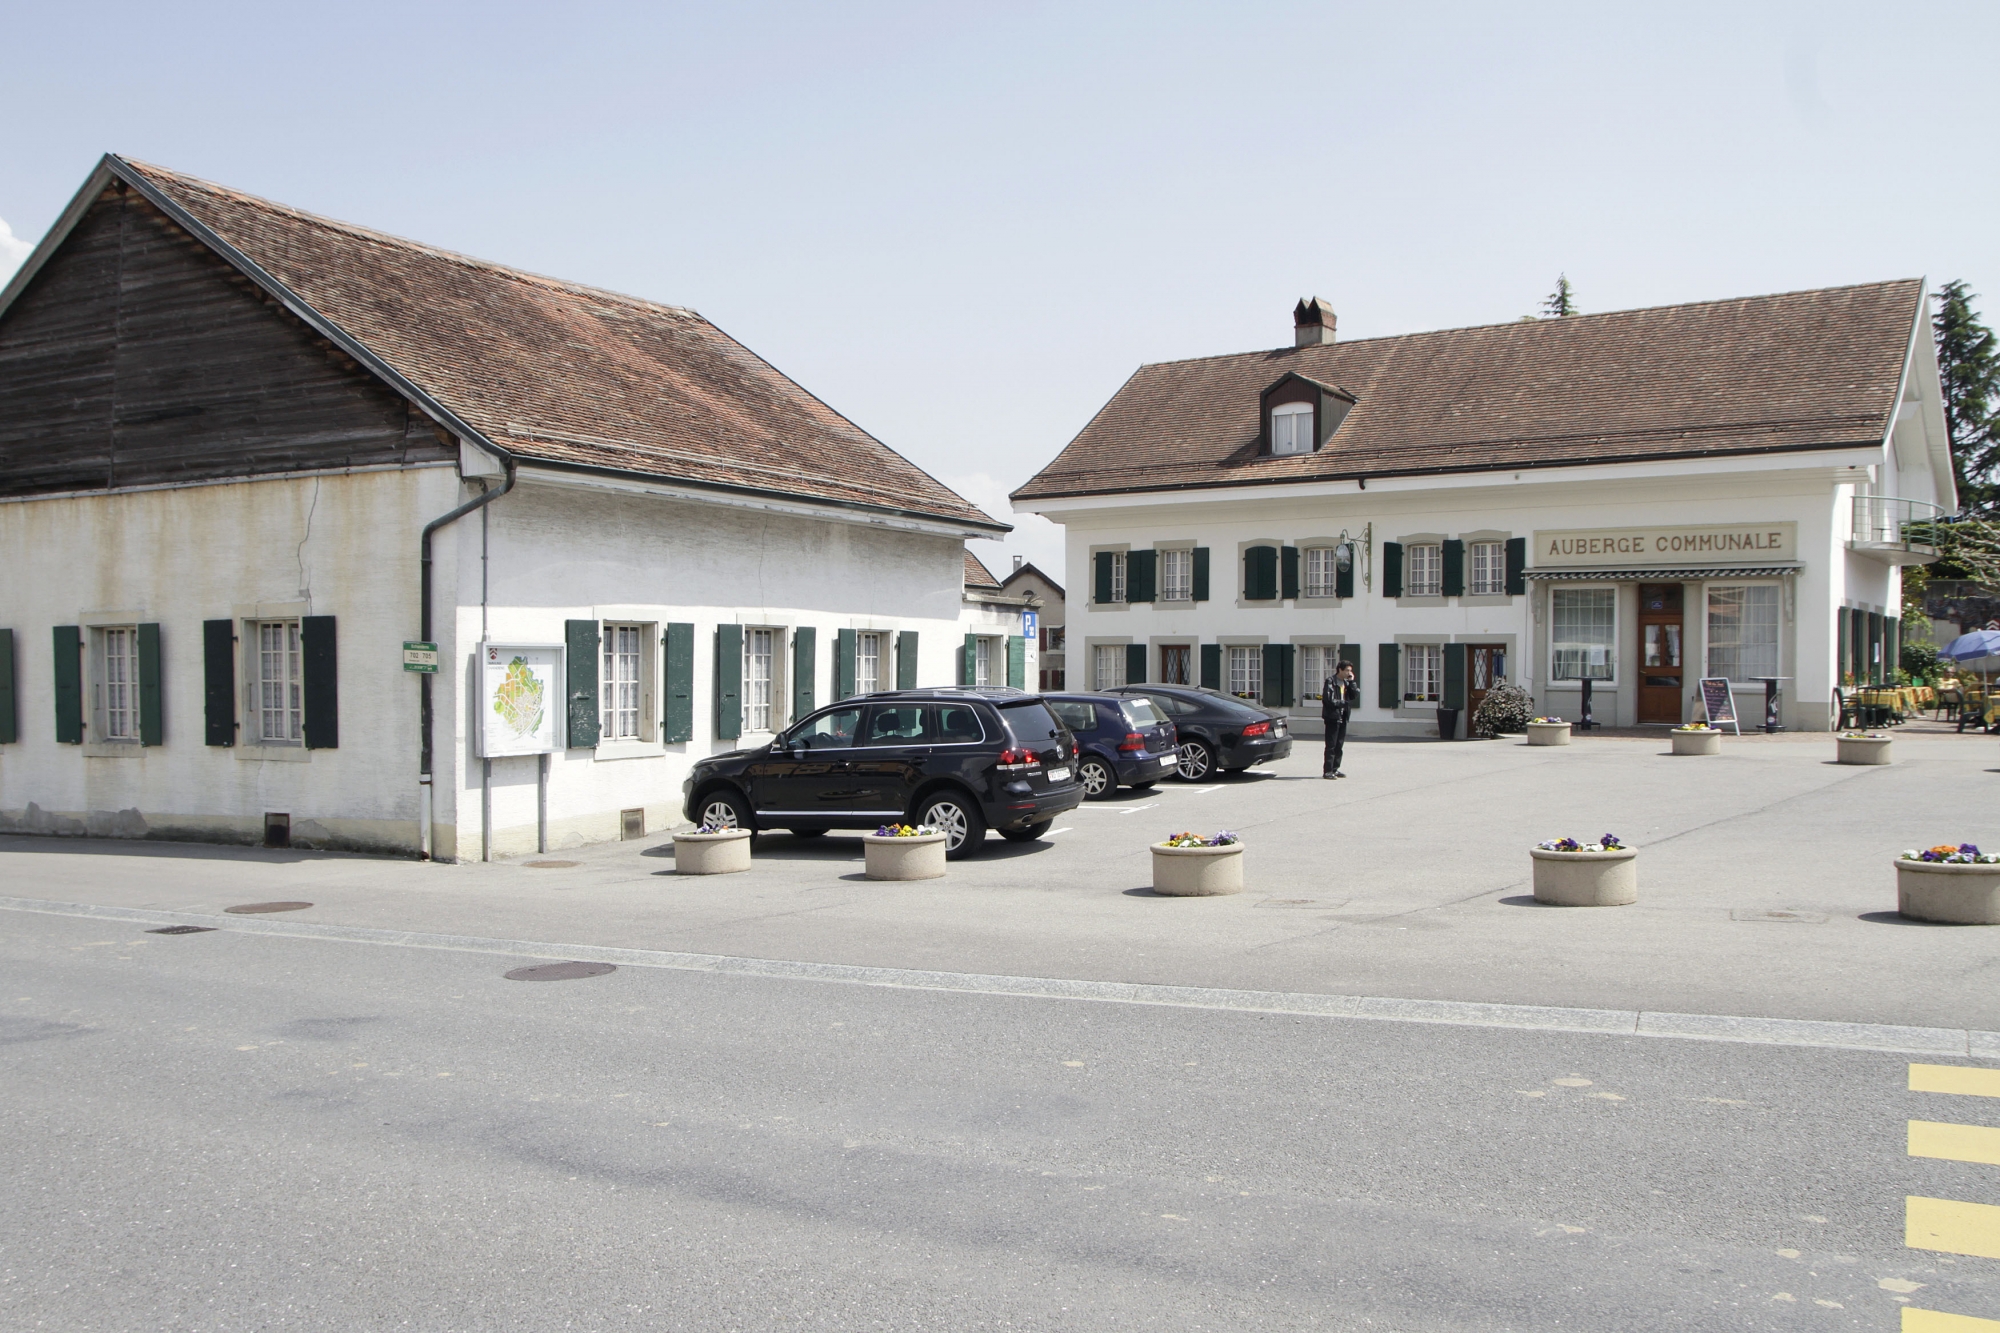 Echandens, Jeudi 2 Mai 2013. Salle villageoise et auberge communale sur la place du Saugey a Echandens. (SAMUEL FROMHOLD)